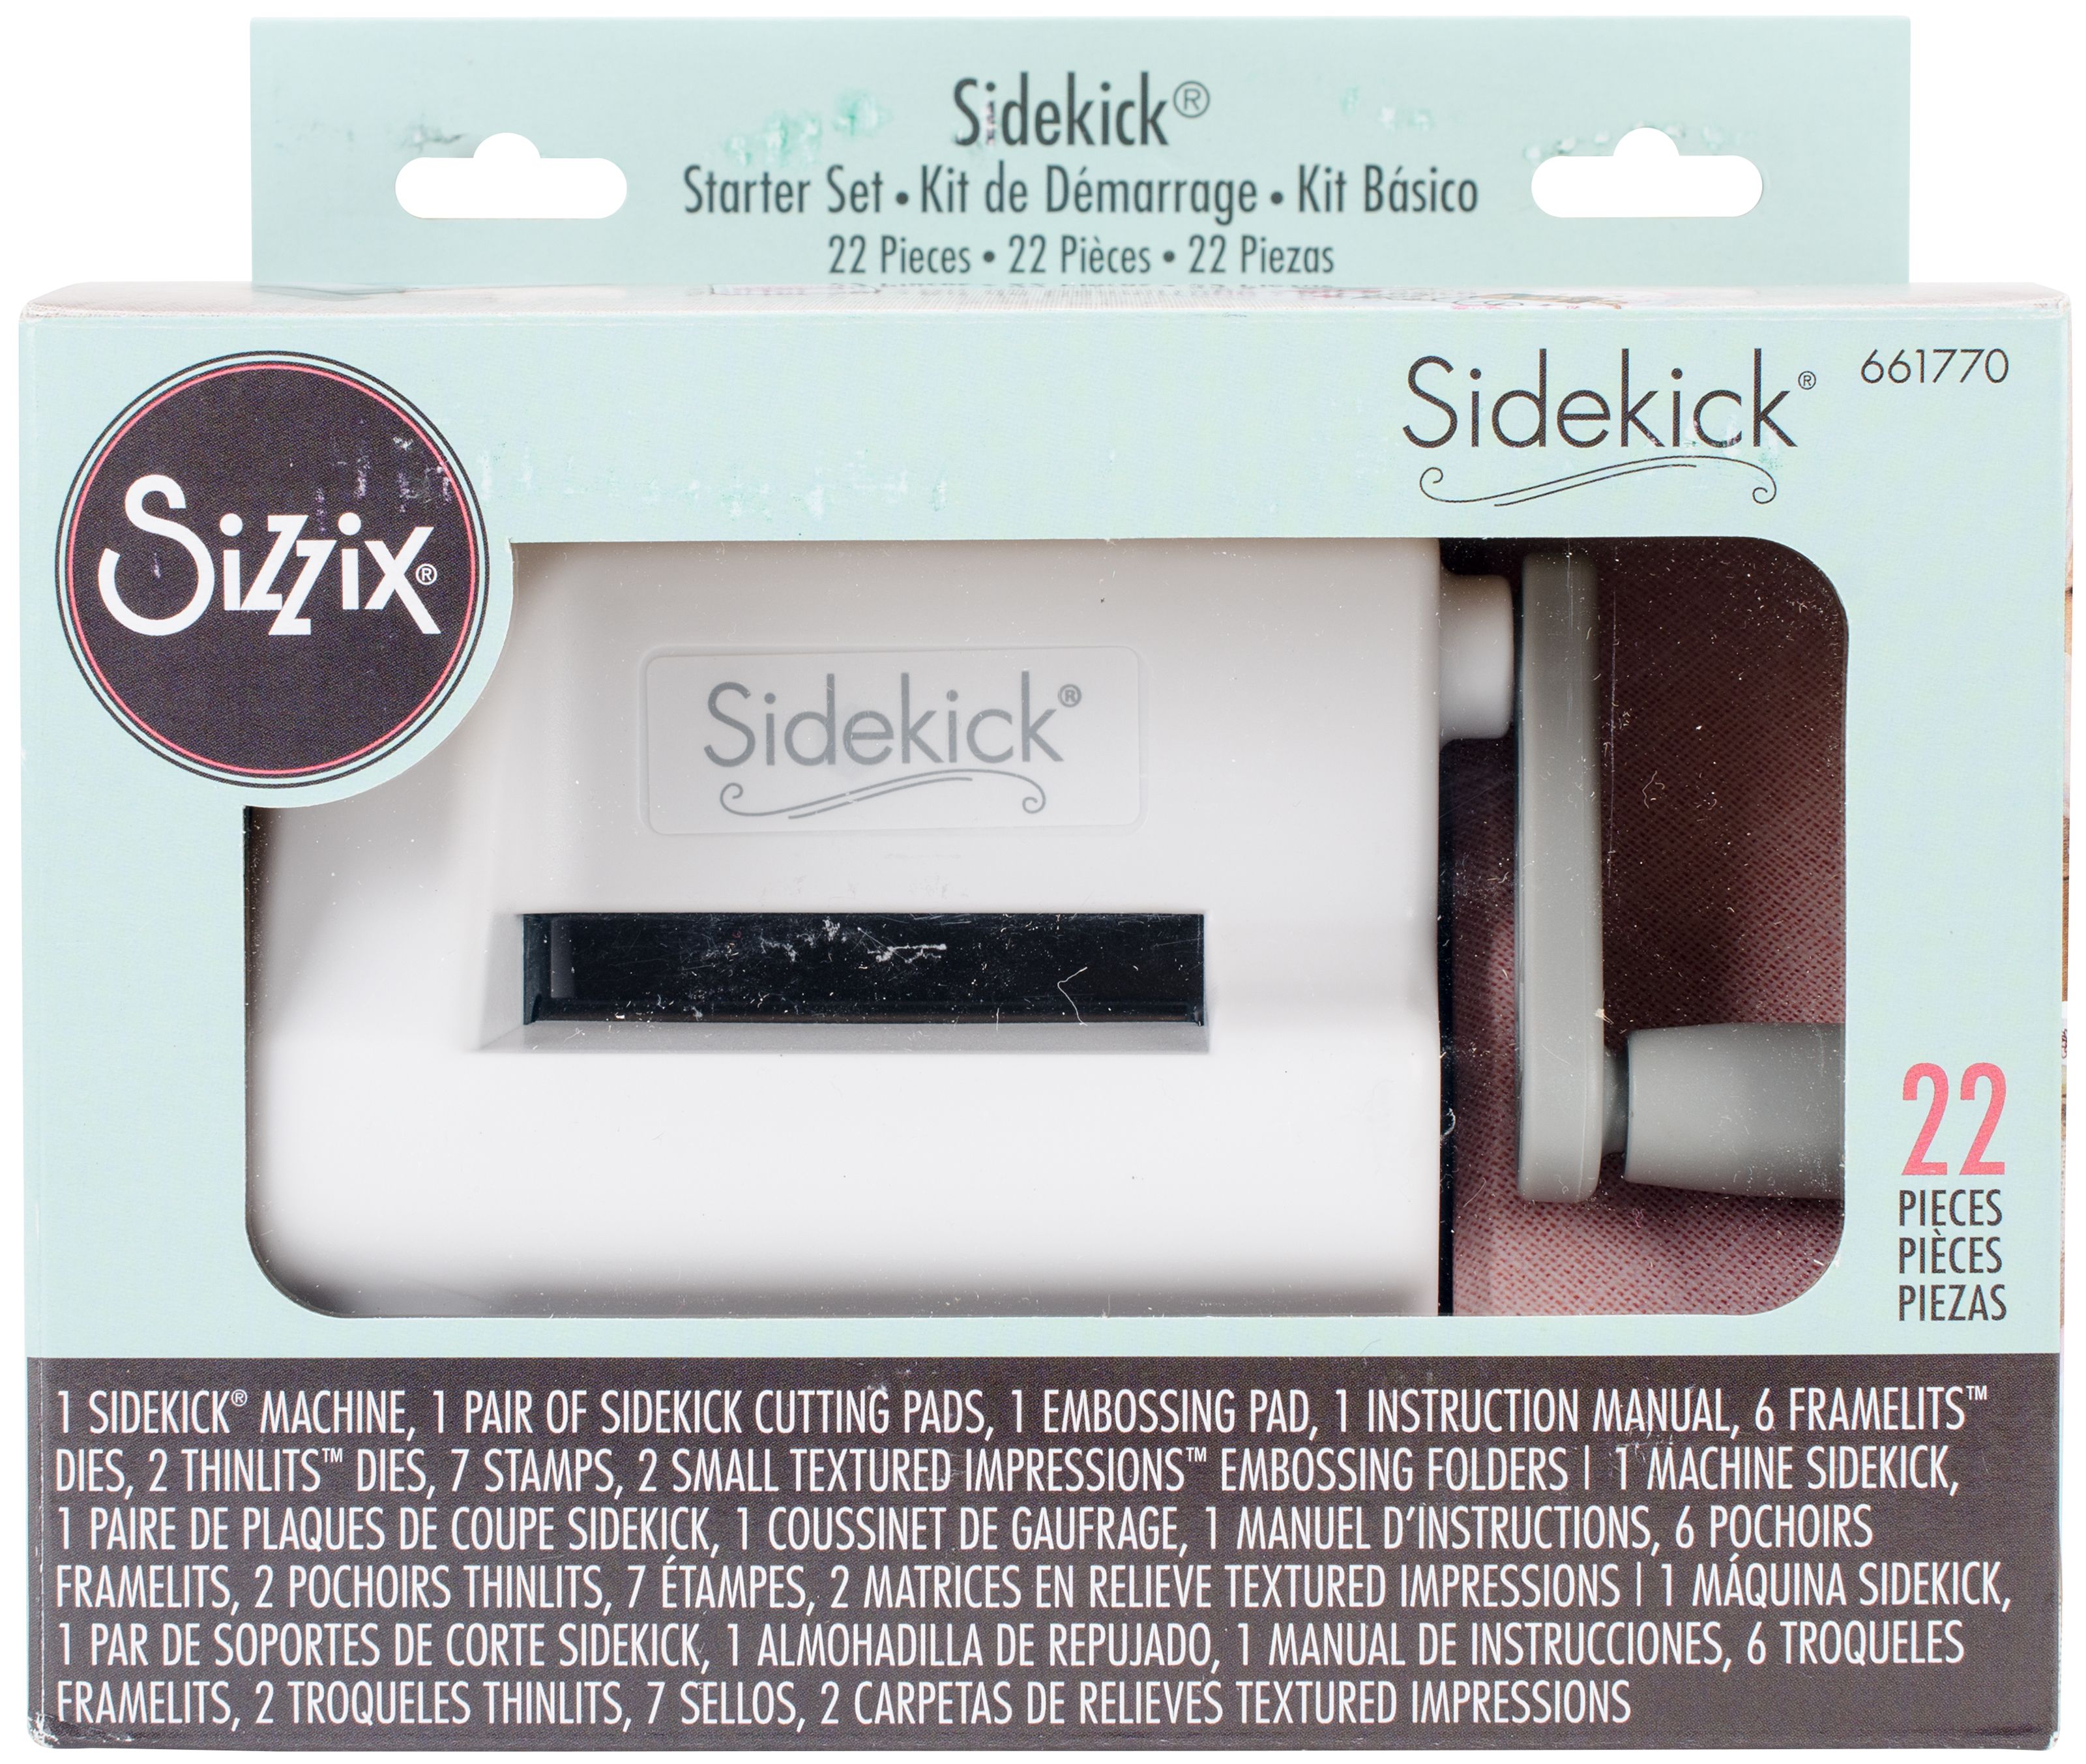 Sizzix Sidekick Starter Kit-White & Gray - image 3 of 6